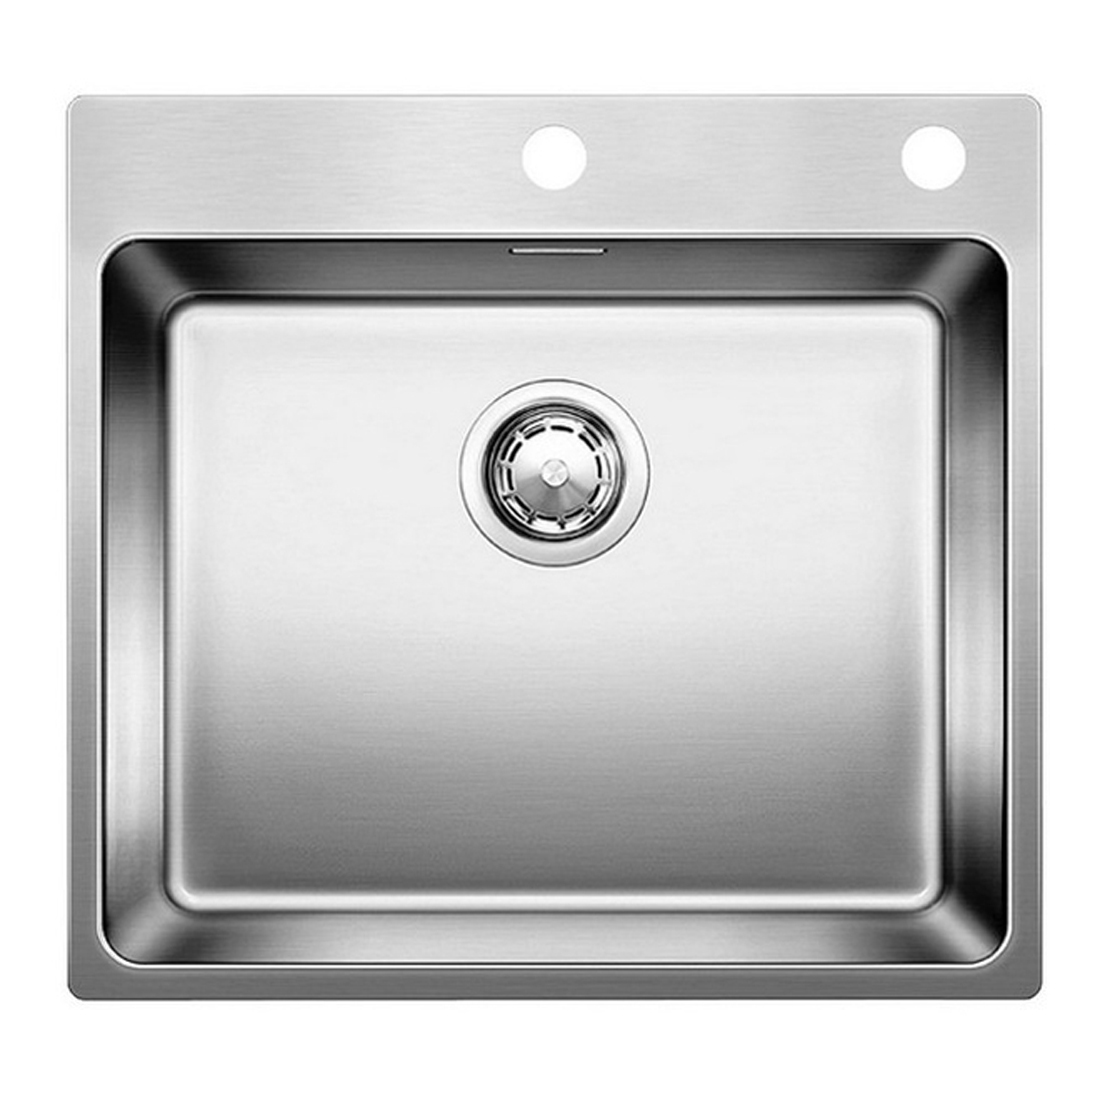 Кухонная мойка Blanco Etagon 500-IF/А полированная сталь кухонная мойка franke box center bwx 220 54 27 tl нержавеющая сталь